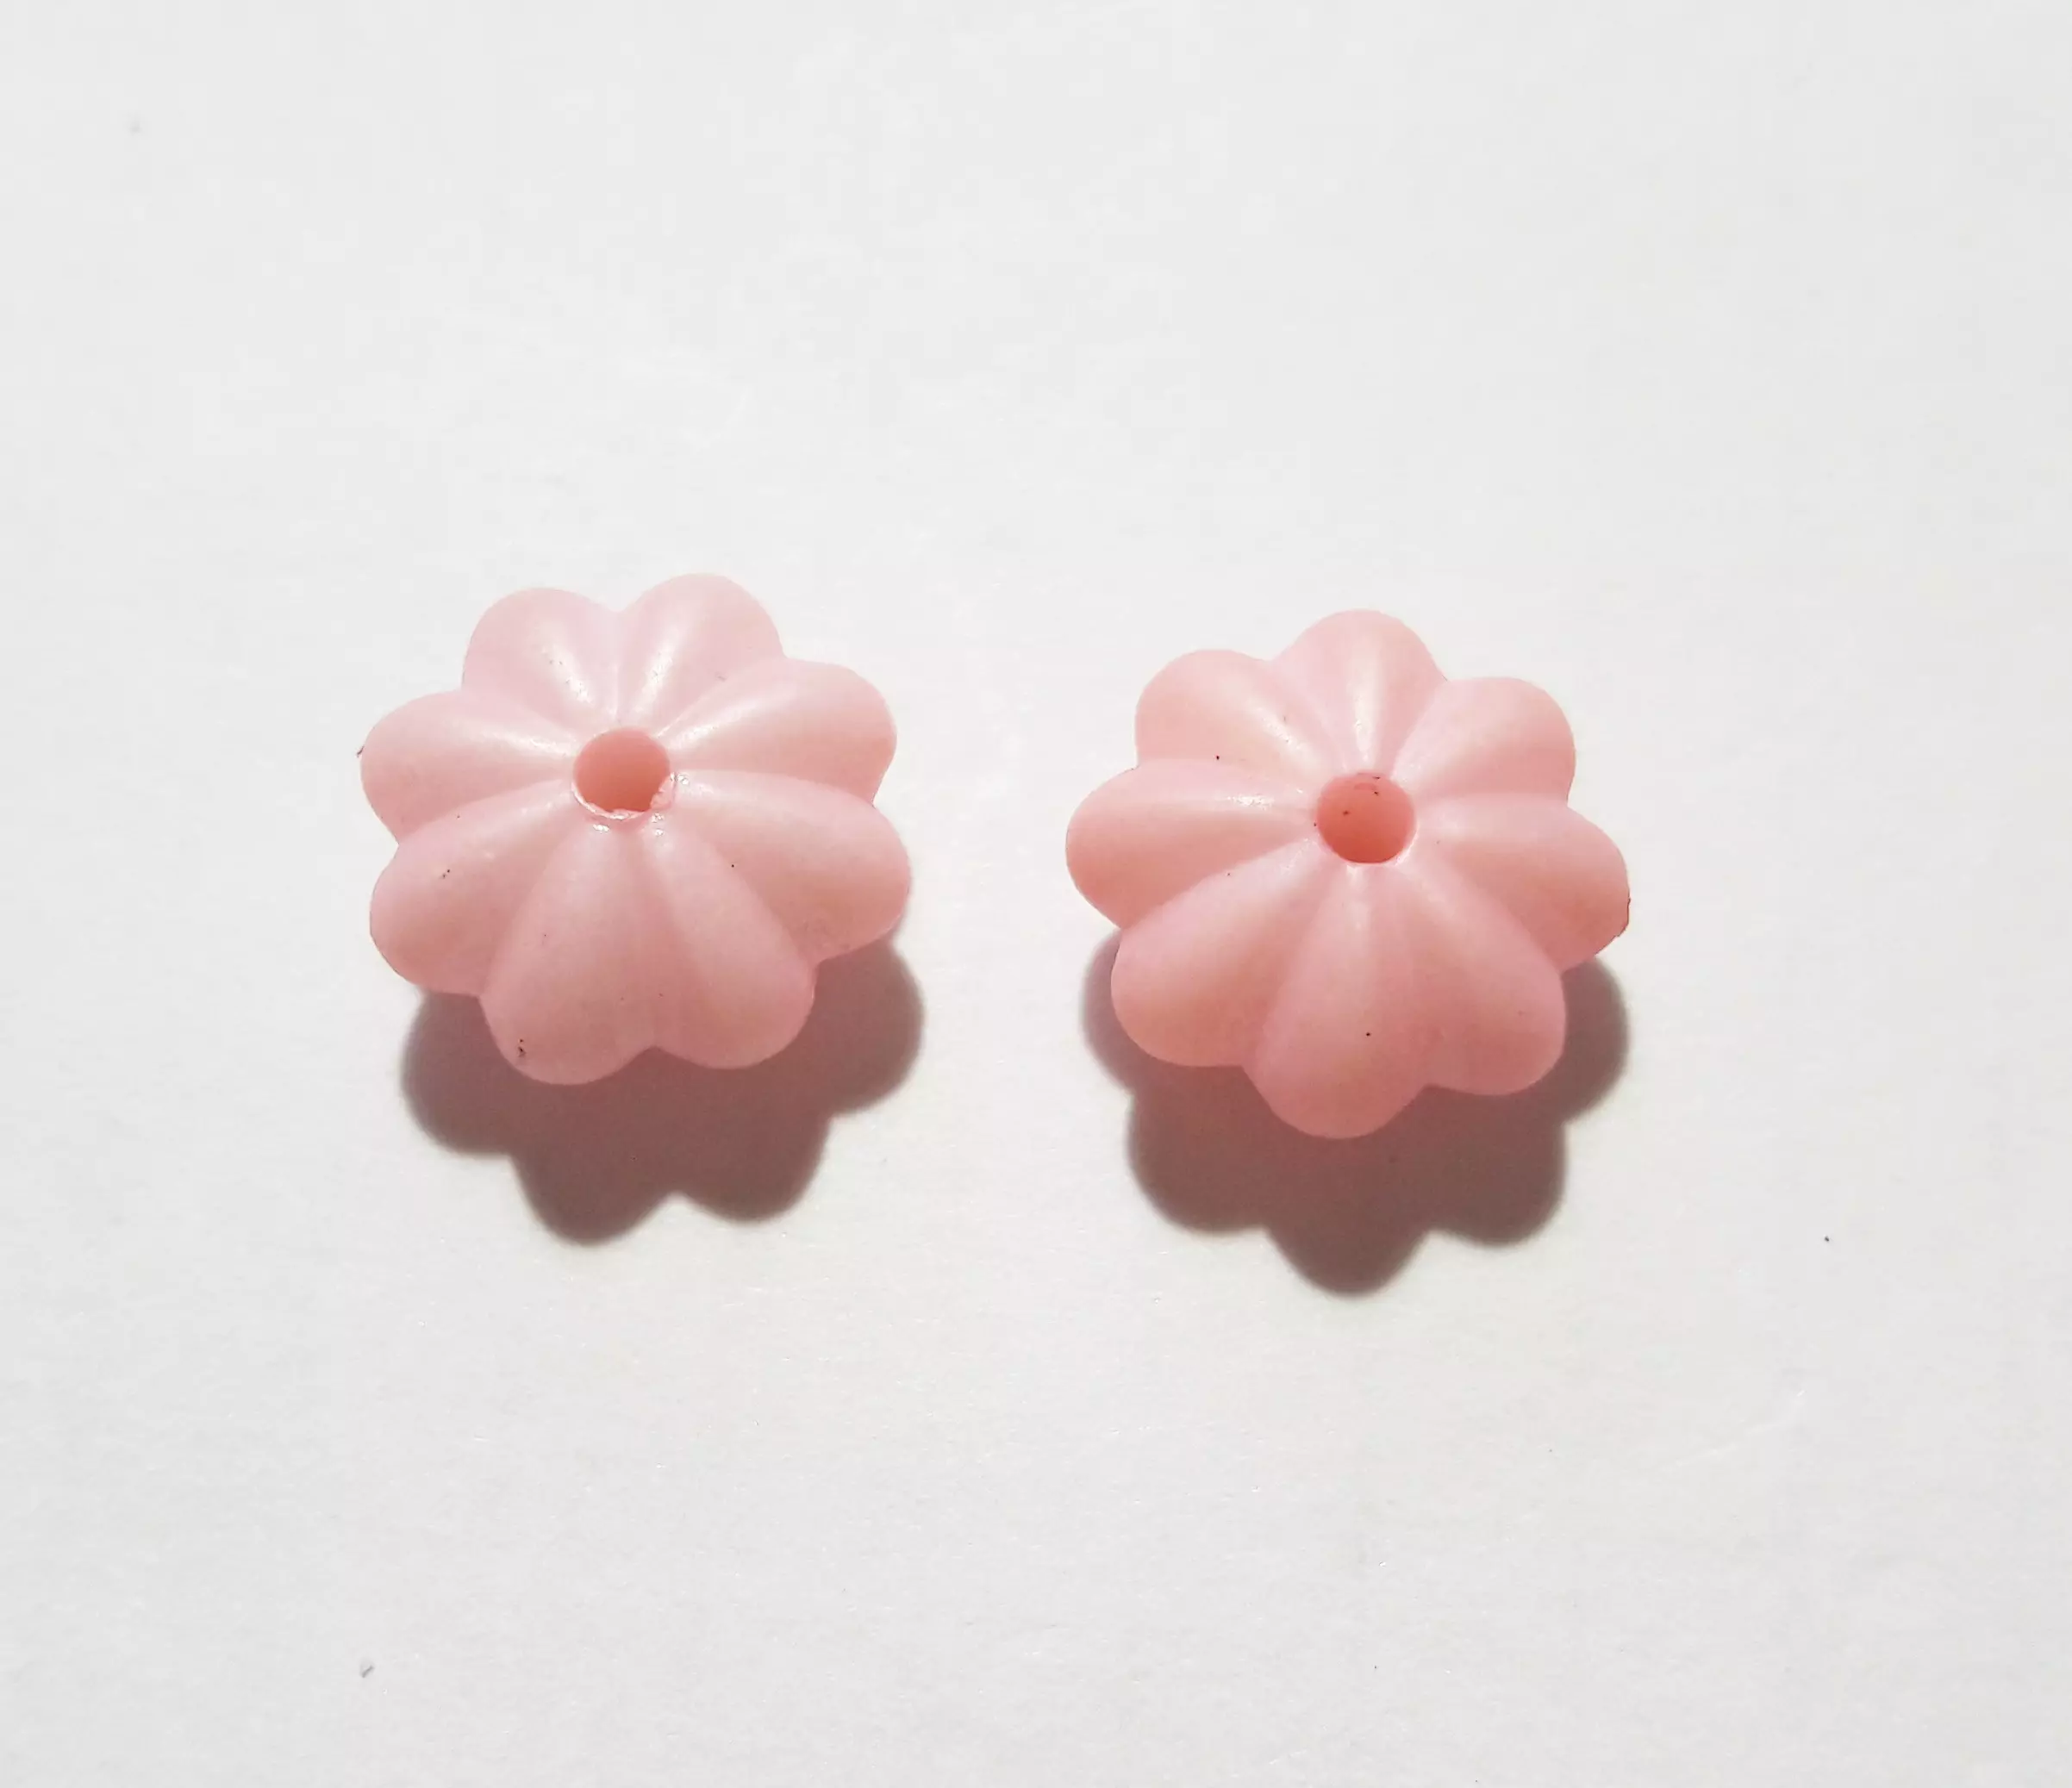 Rózsaszín virág gyöngy, köztes, 12x6 mm